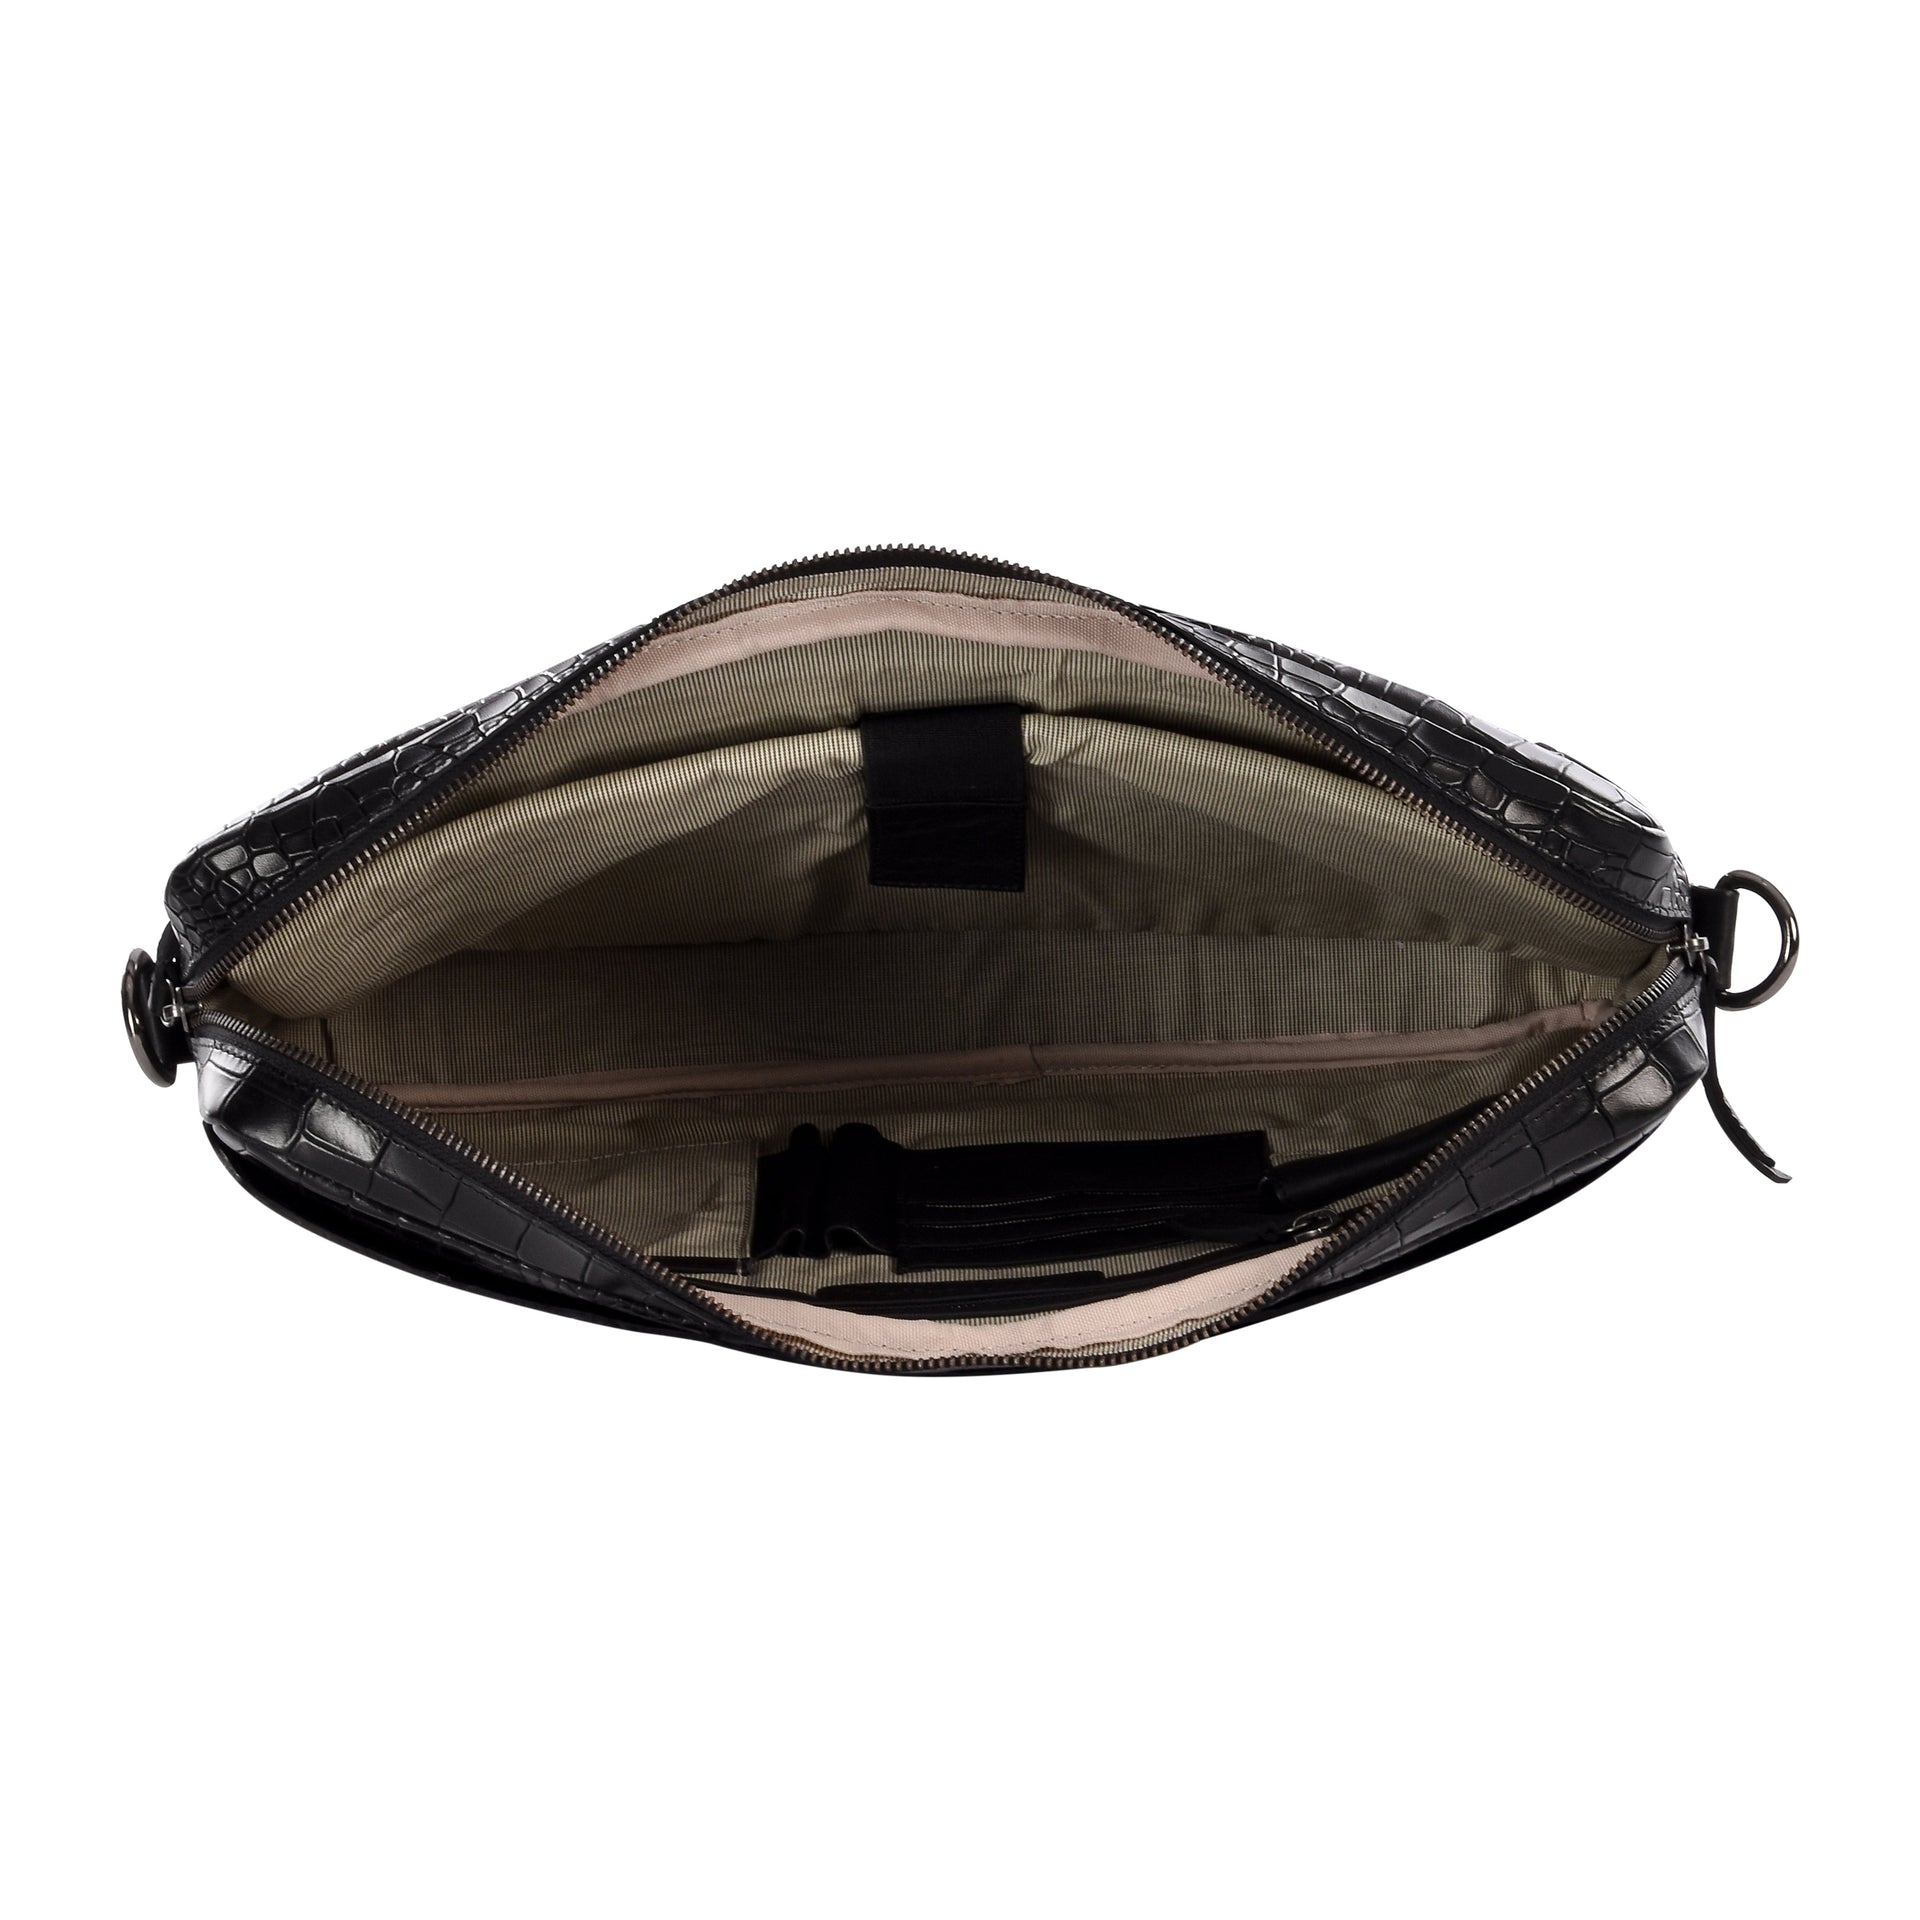 Caiman Business Bag - Salient Black - Laptop Bags